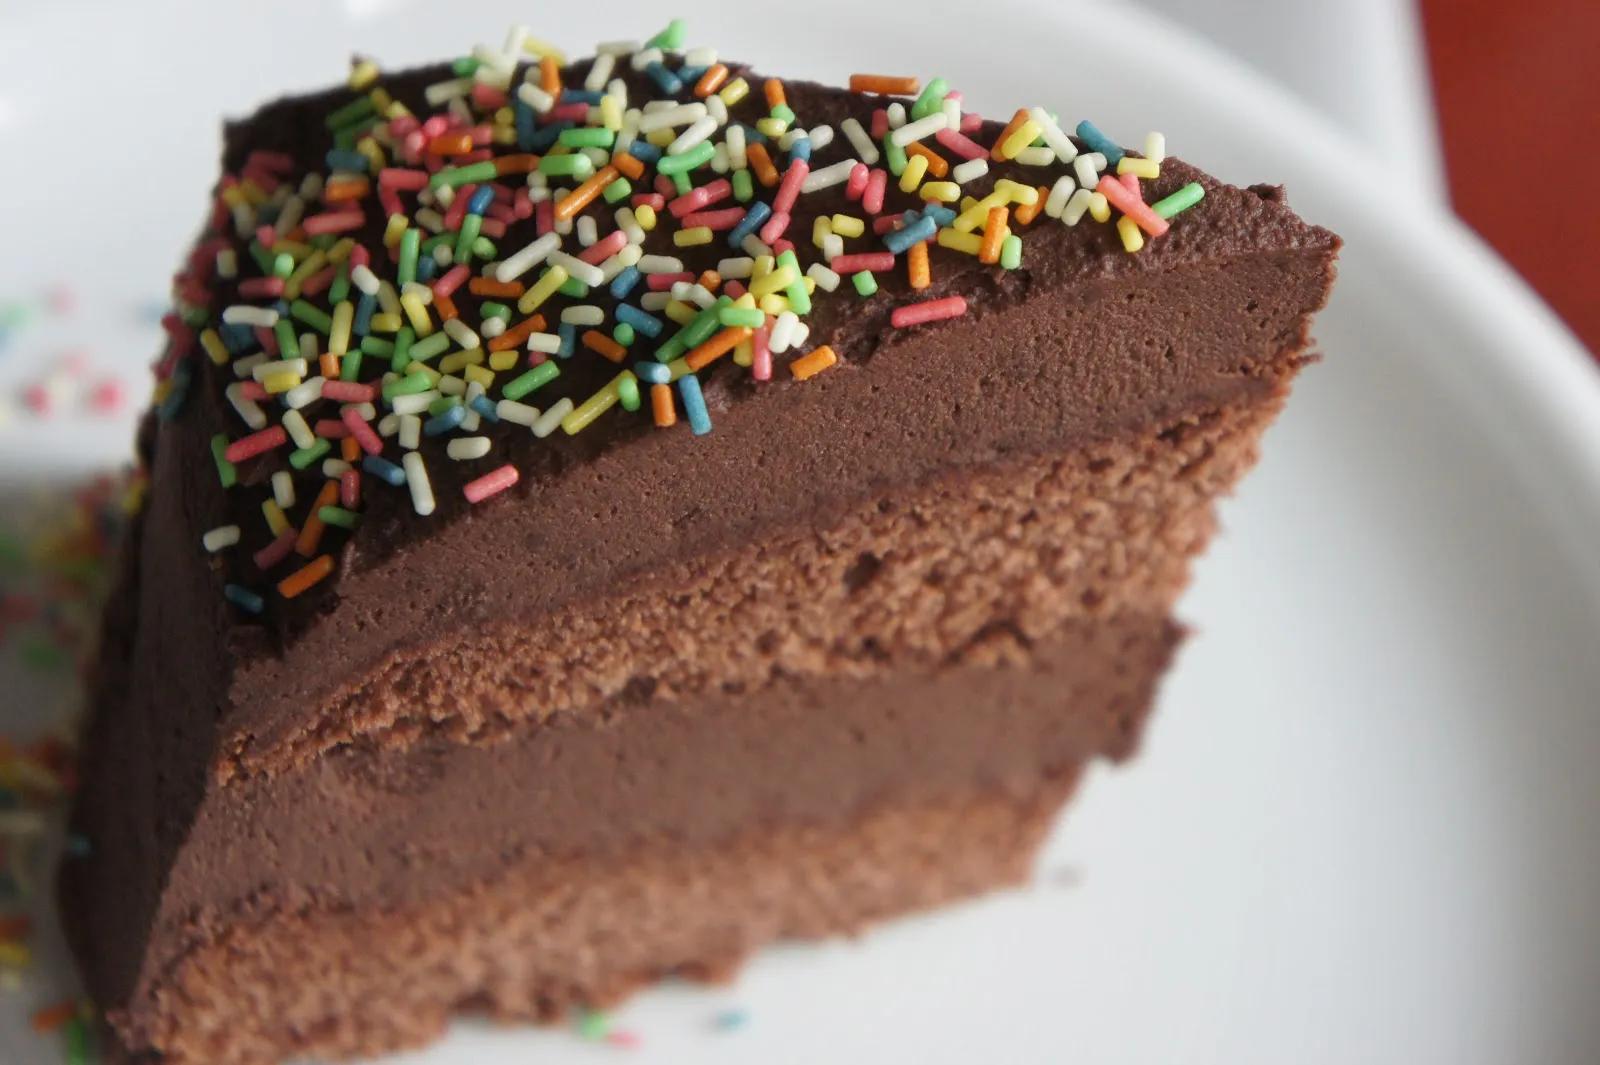 Schokoladen Geburtstagskuchen — Rezepte Suchen